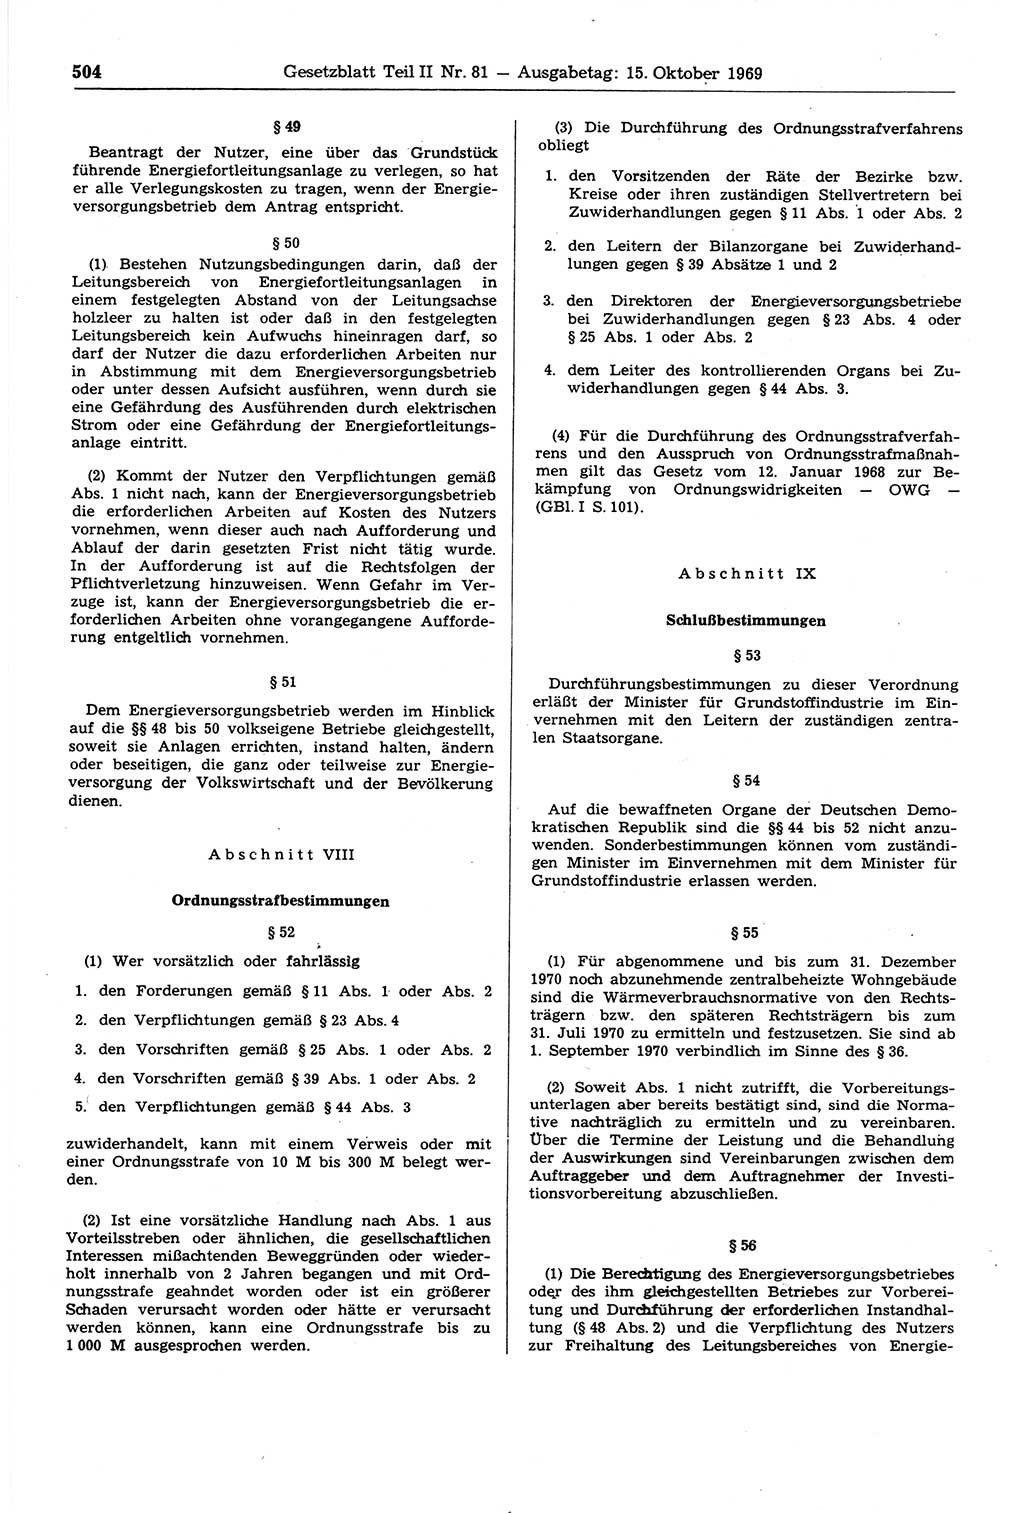 Gesetzblatt (GBl.) der Deutschen Demokratischen Republik (DDR) Teil ⅠⅠ 1969, Seite 504 (GBl. DDR ⅠⅠ 1969, S. 504)